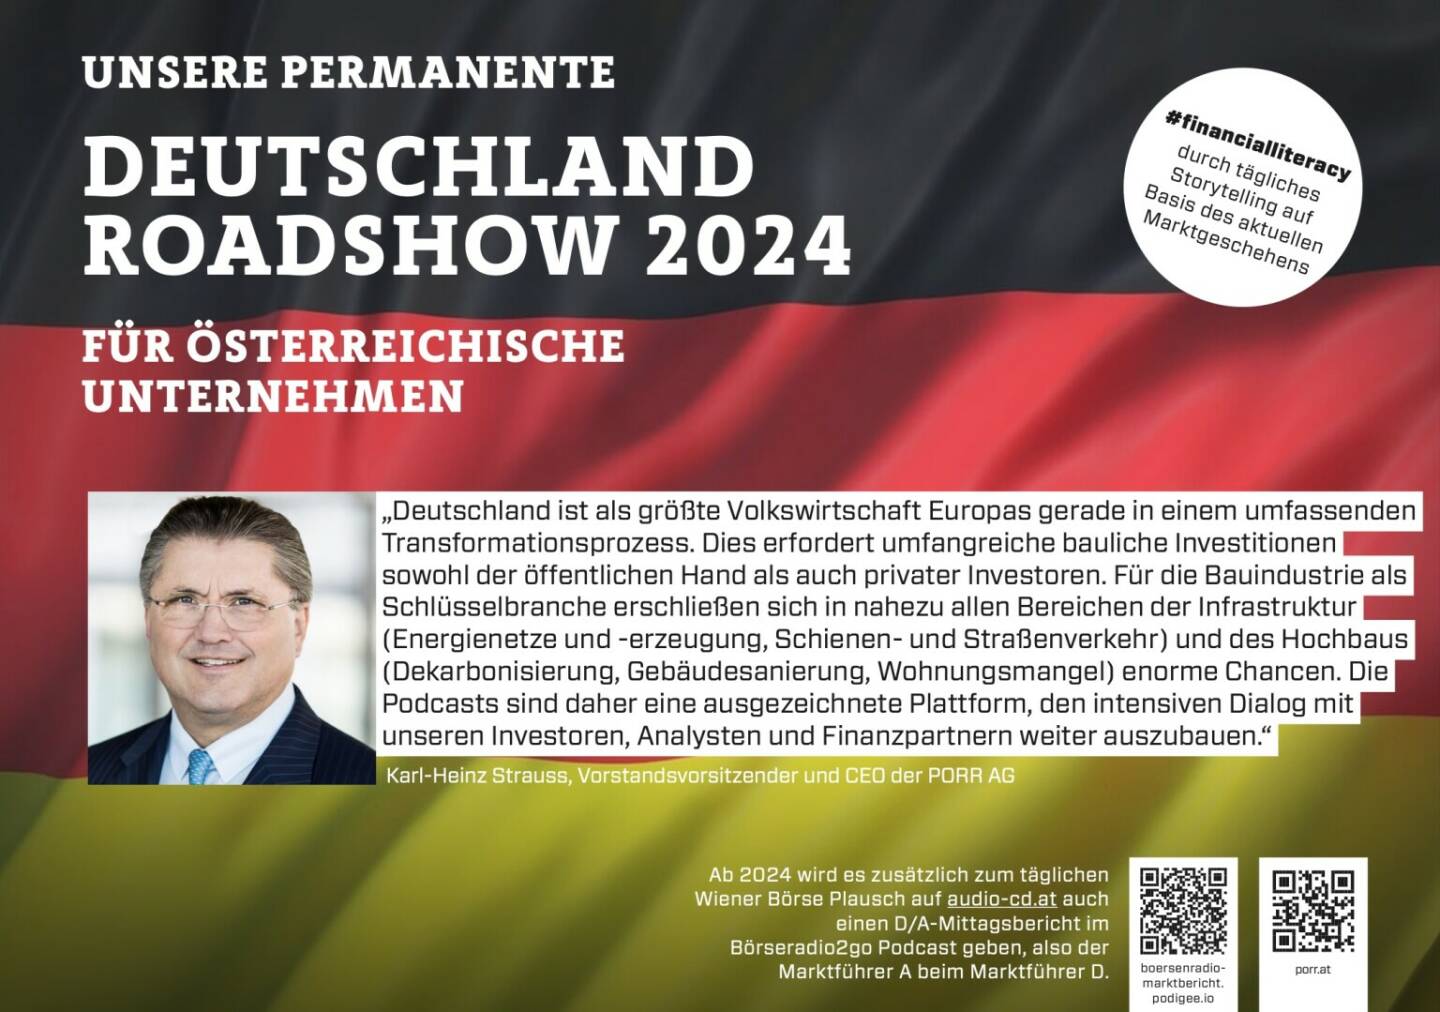 Karl-Heinz Strauss mit der Porr 2024 mit uns auf Deutschlandroadshow für https://boersenradio-marktbericht.podigee.io